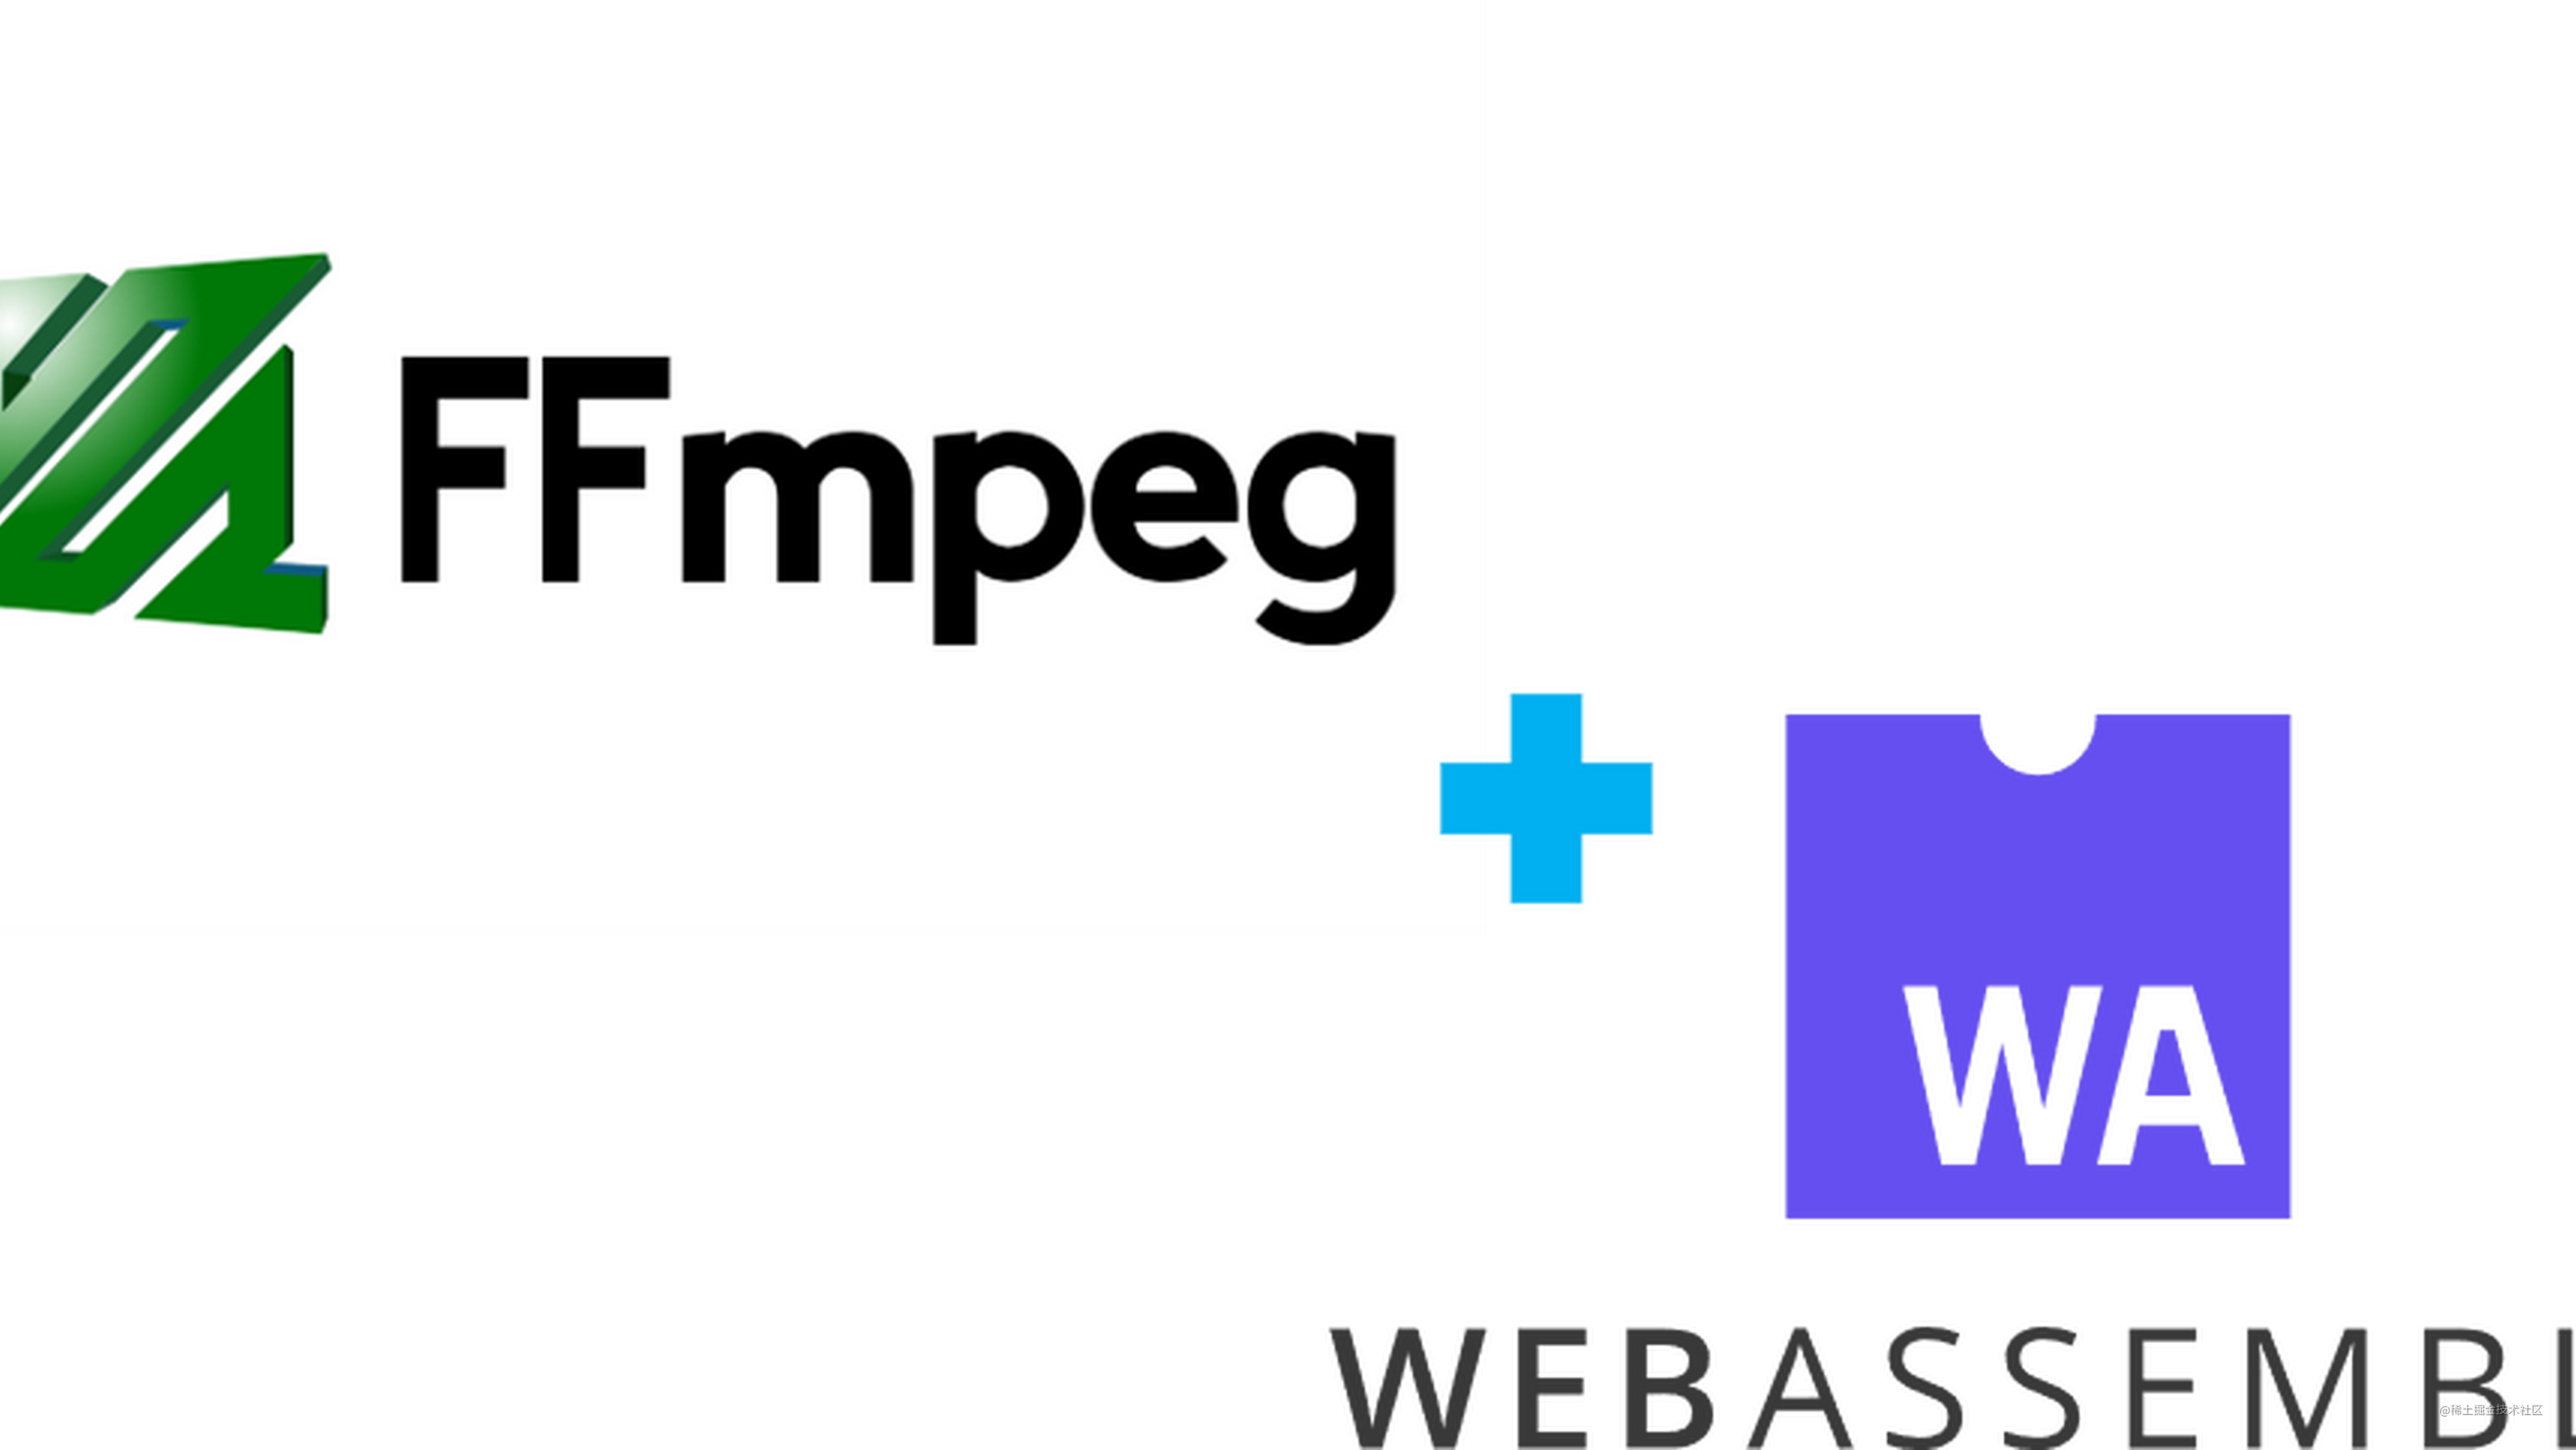  前端视频帧提取 ffmpeg + Webassembly